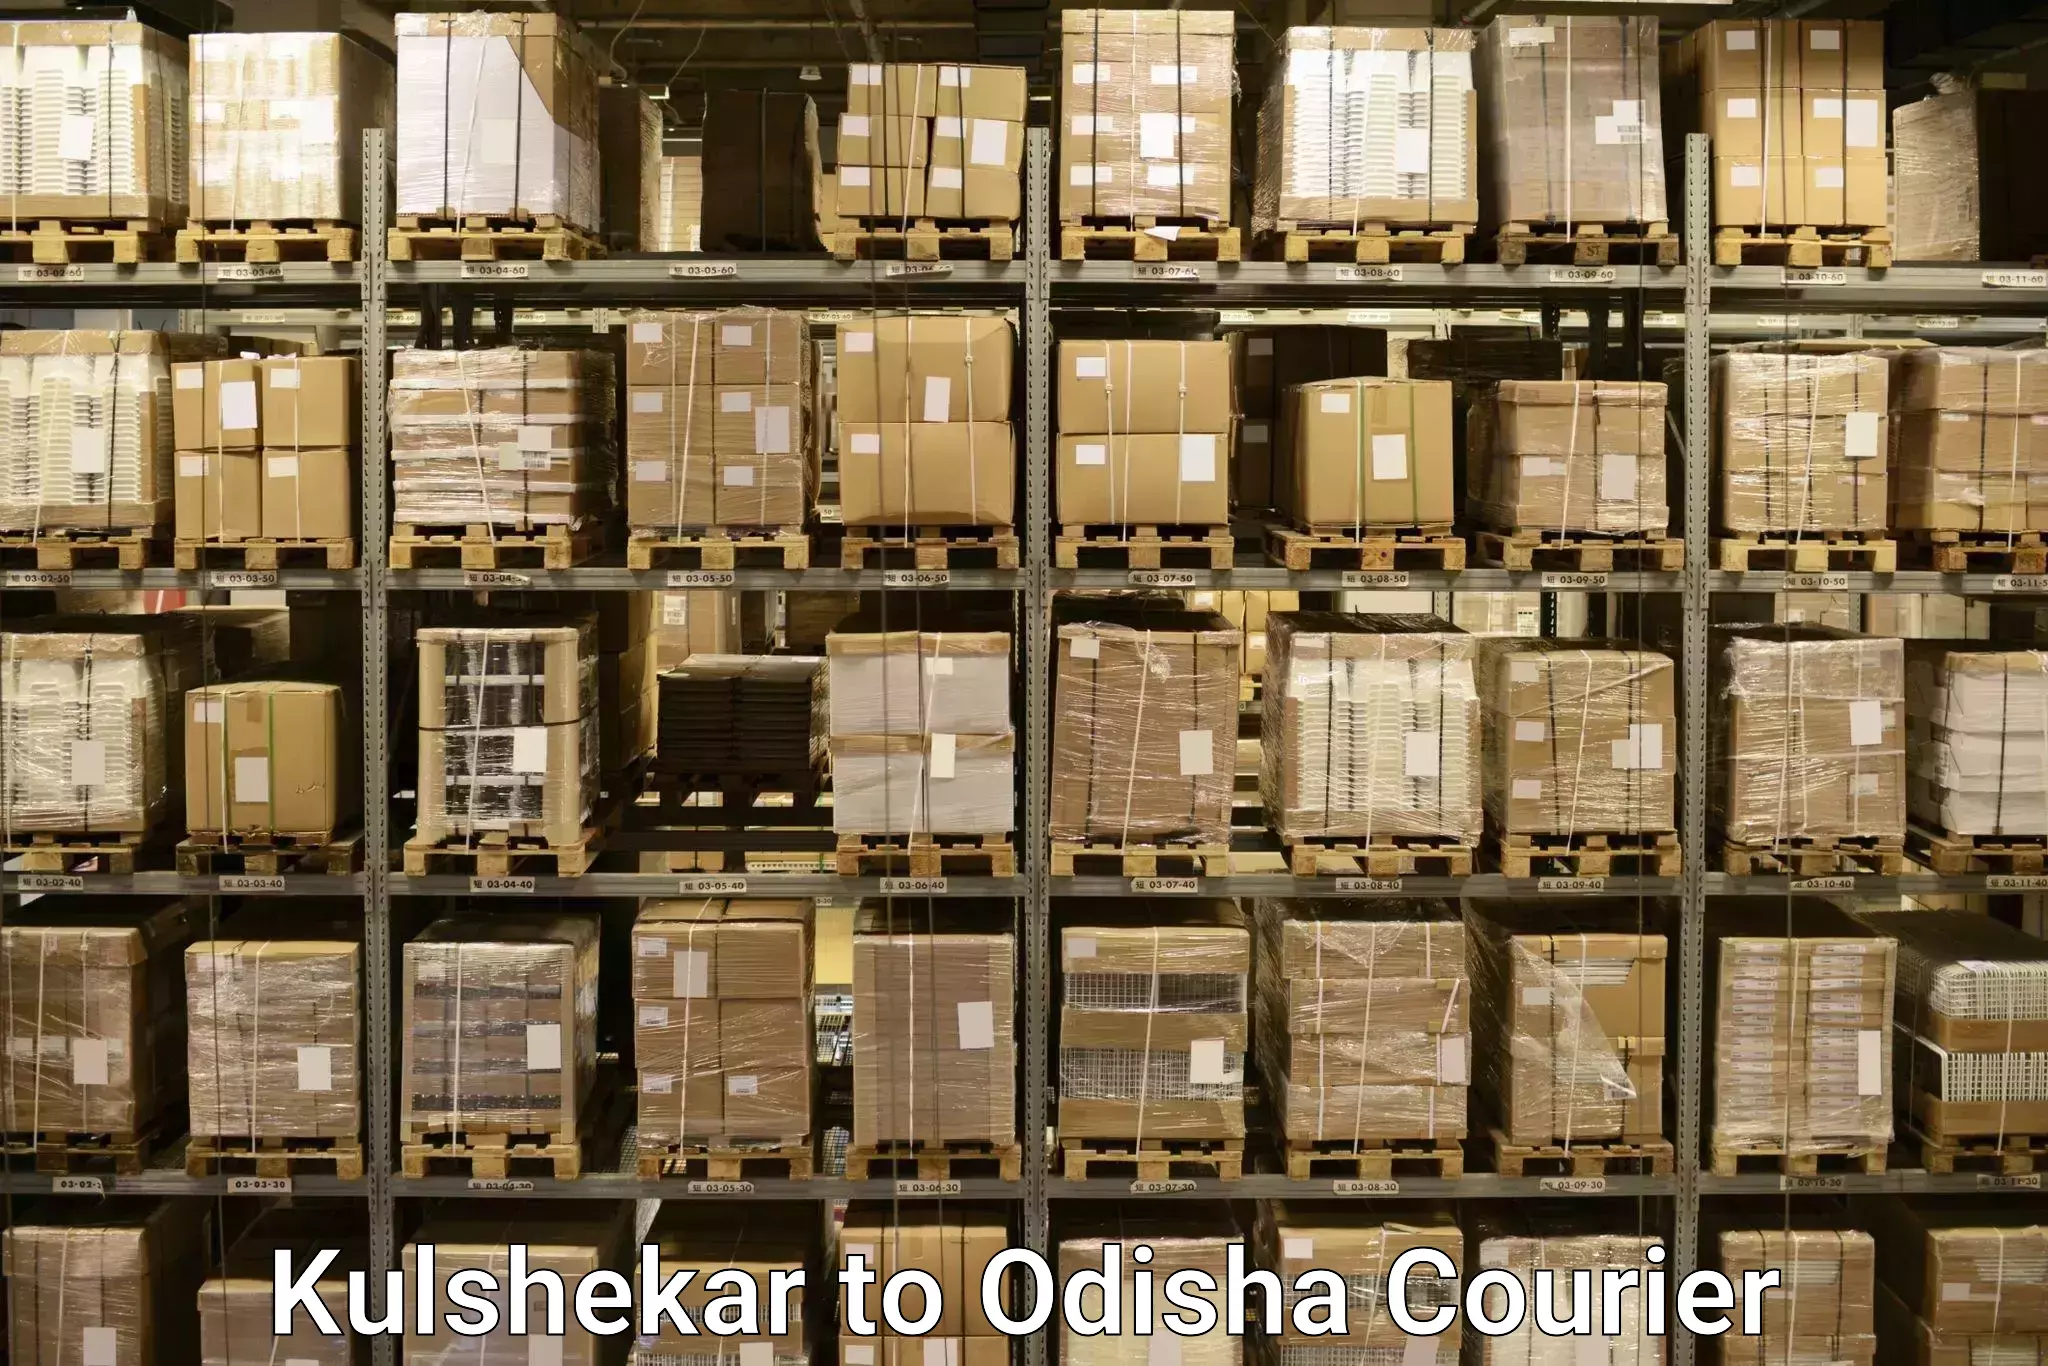 Baggage transport updates Kulshekar to Odisha